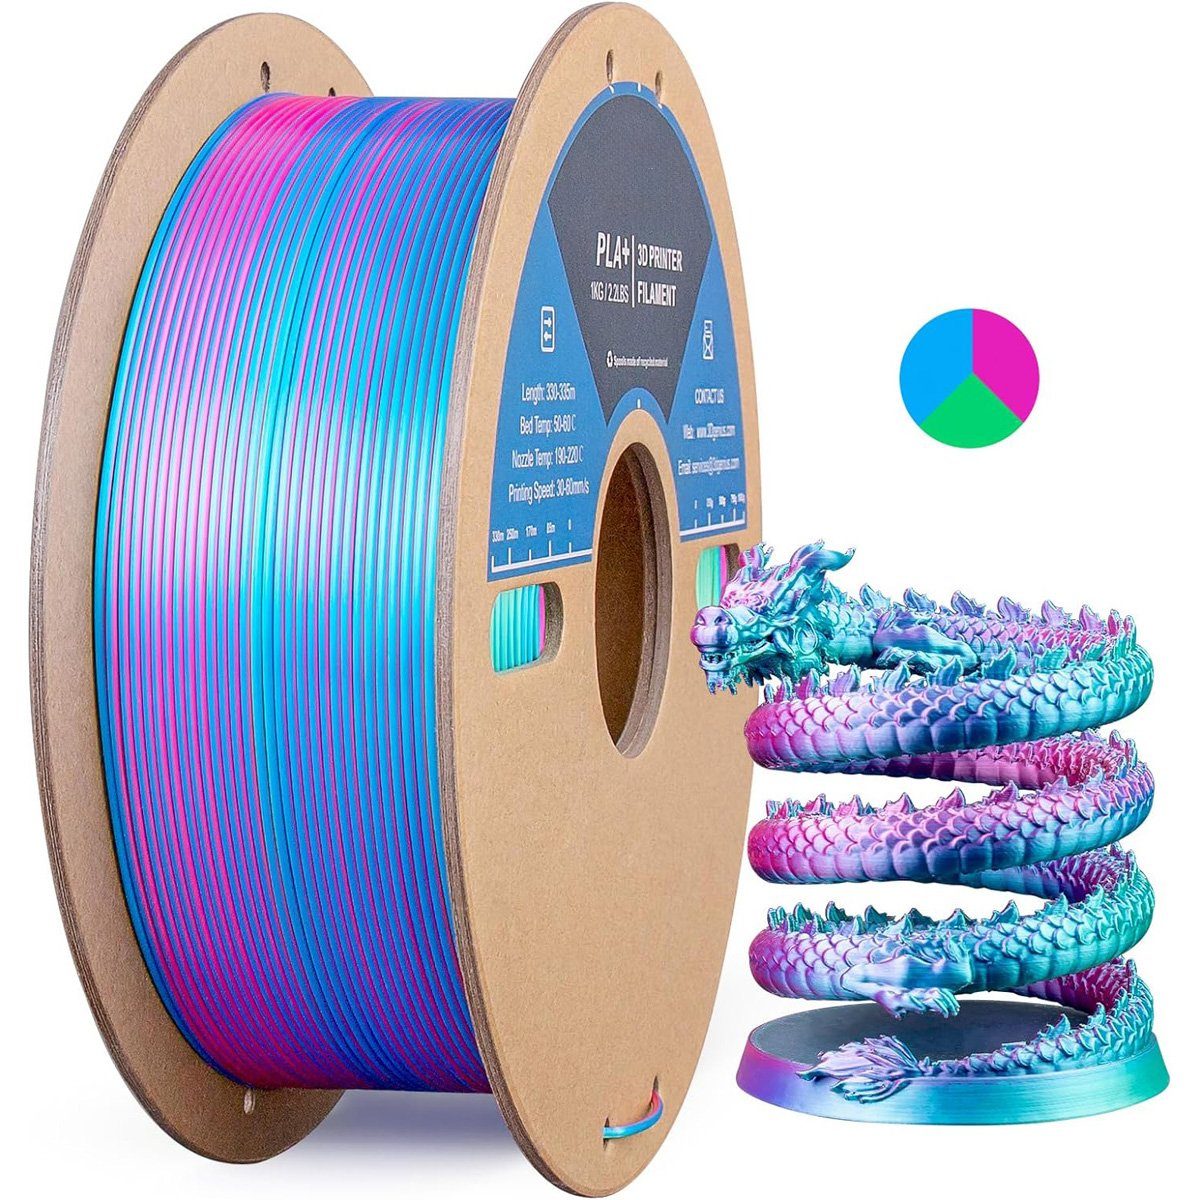 yozhiqu 3D-Drucker 3D-Drucker Verbrauchsmaterial, Tricolour Silk PLA Filament - 1.75mm, Rose Red Sky Teal 3 in 1 Farbe für die meisten FDM-Drucker